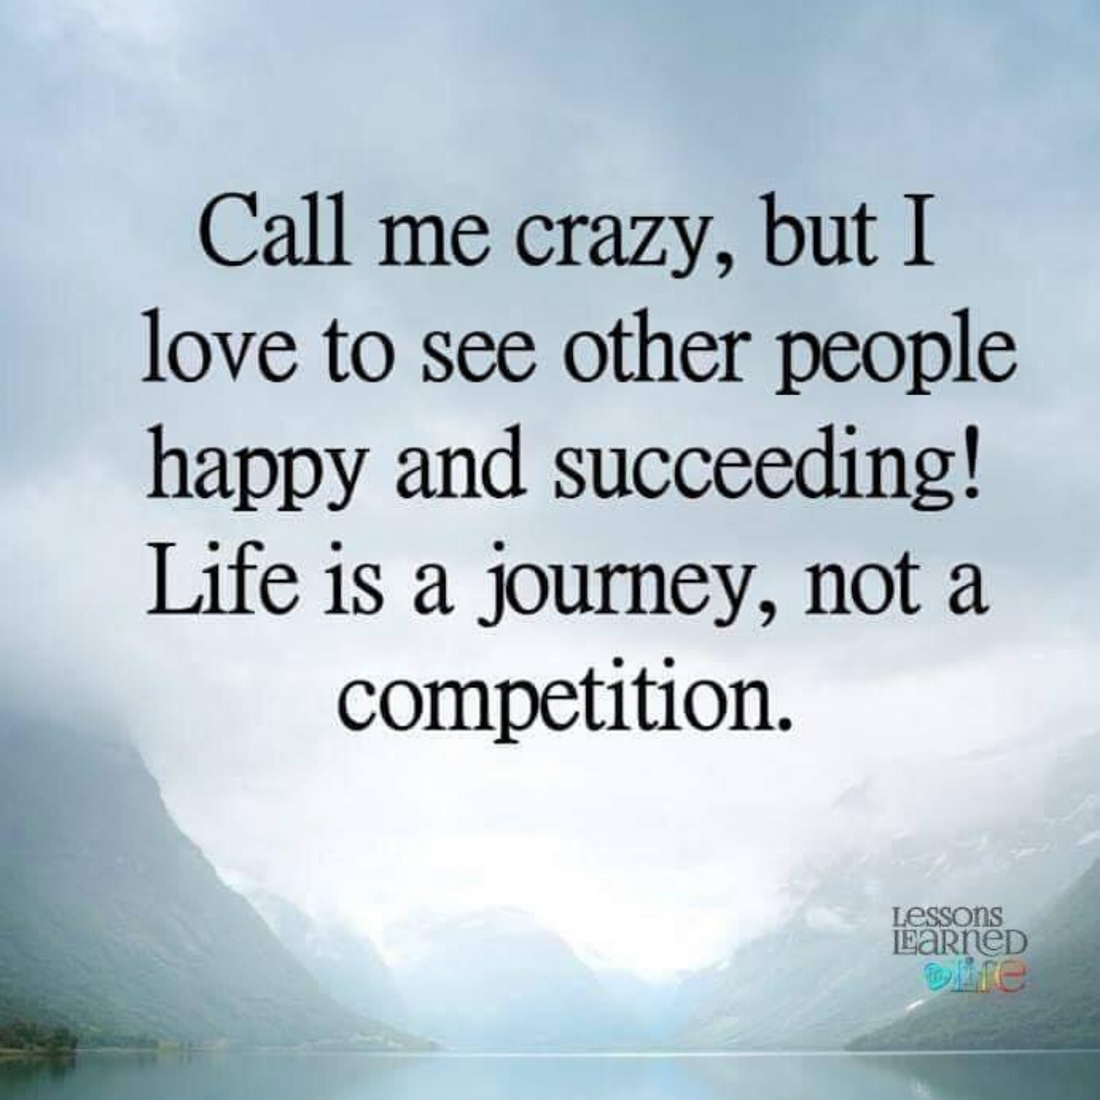 Call me crazy 💜🙏